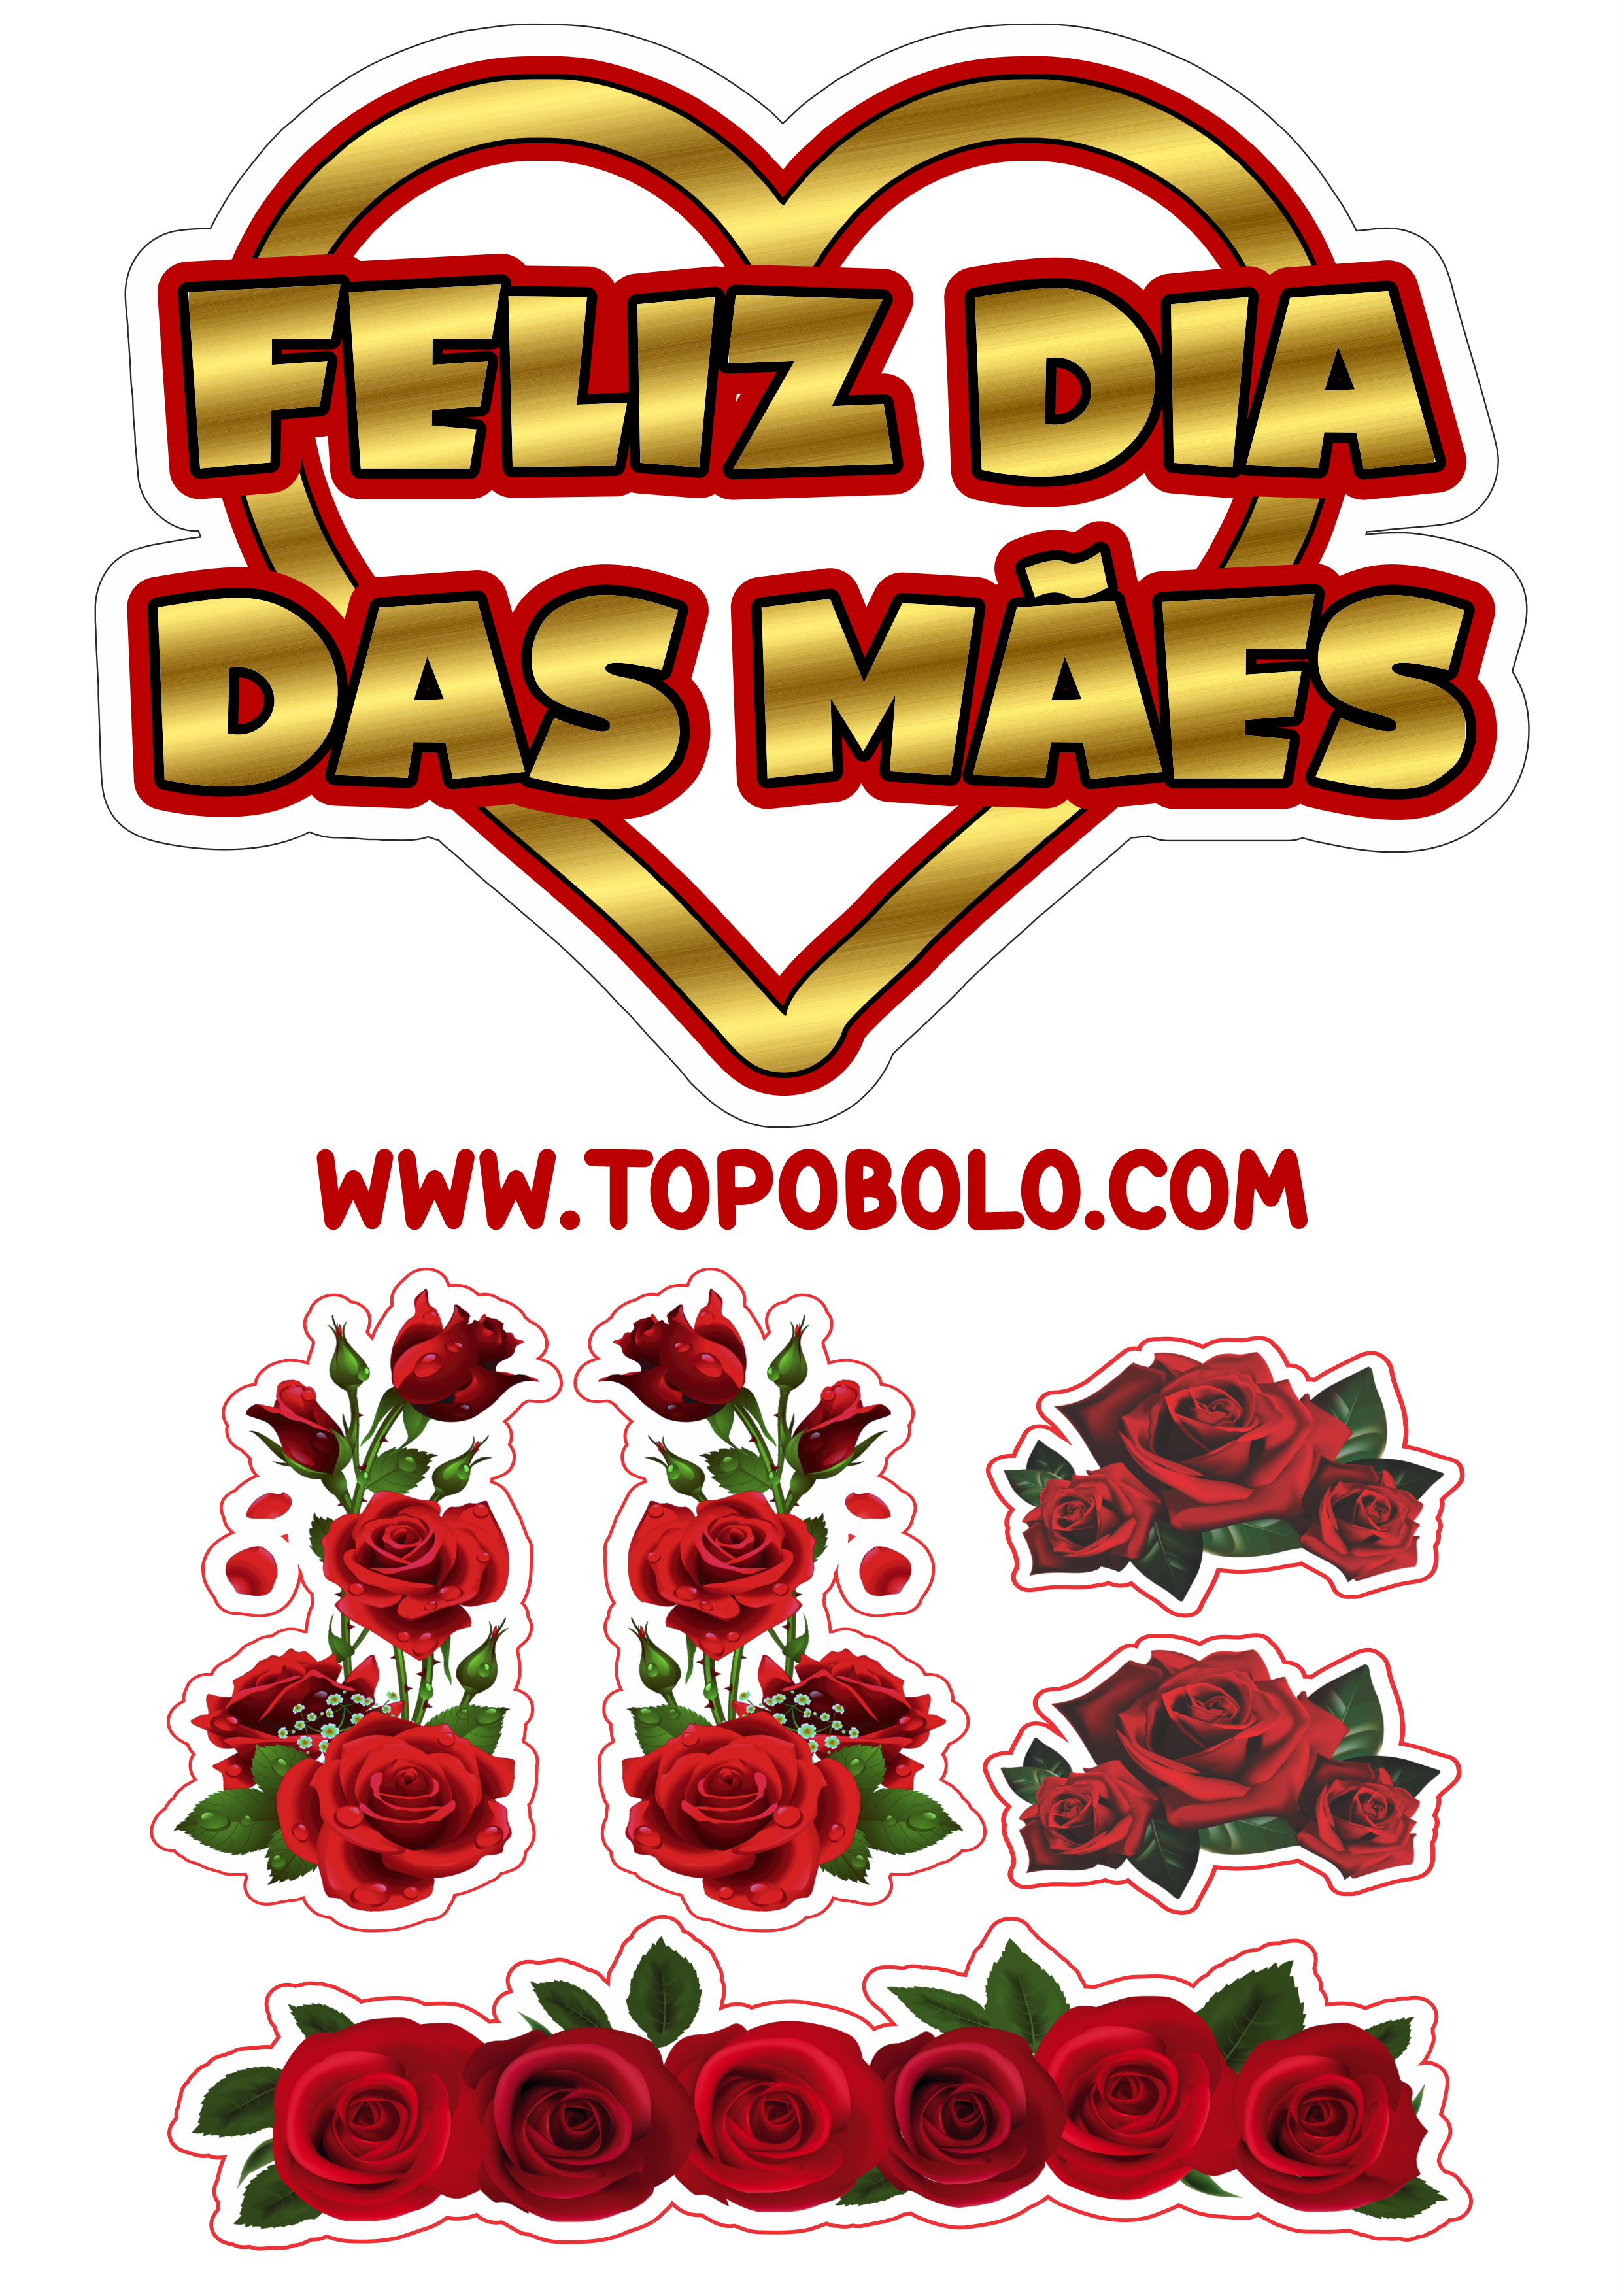 Topo de bolo para imprimir feliz dia das mães decoração dourada com vermelho flores rosas download grátis png